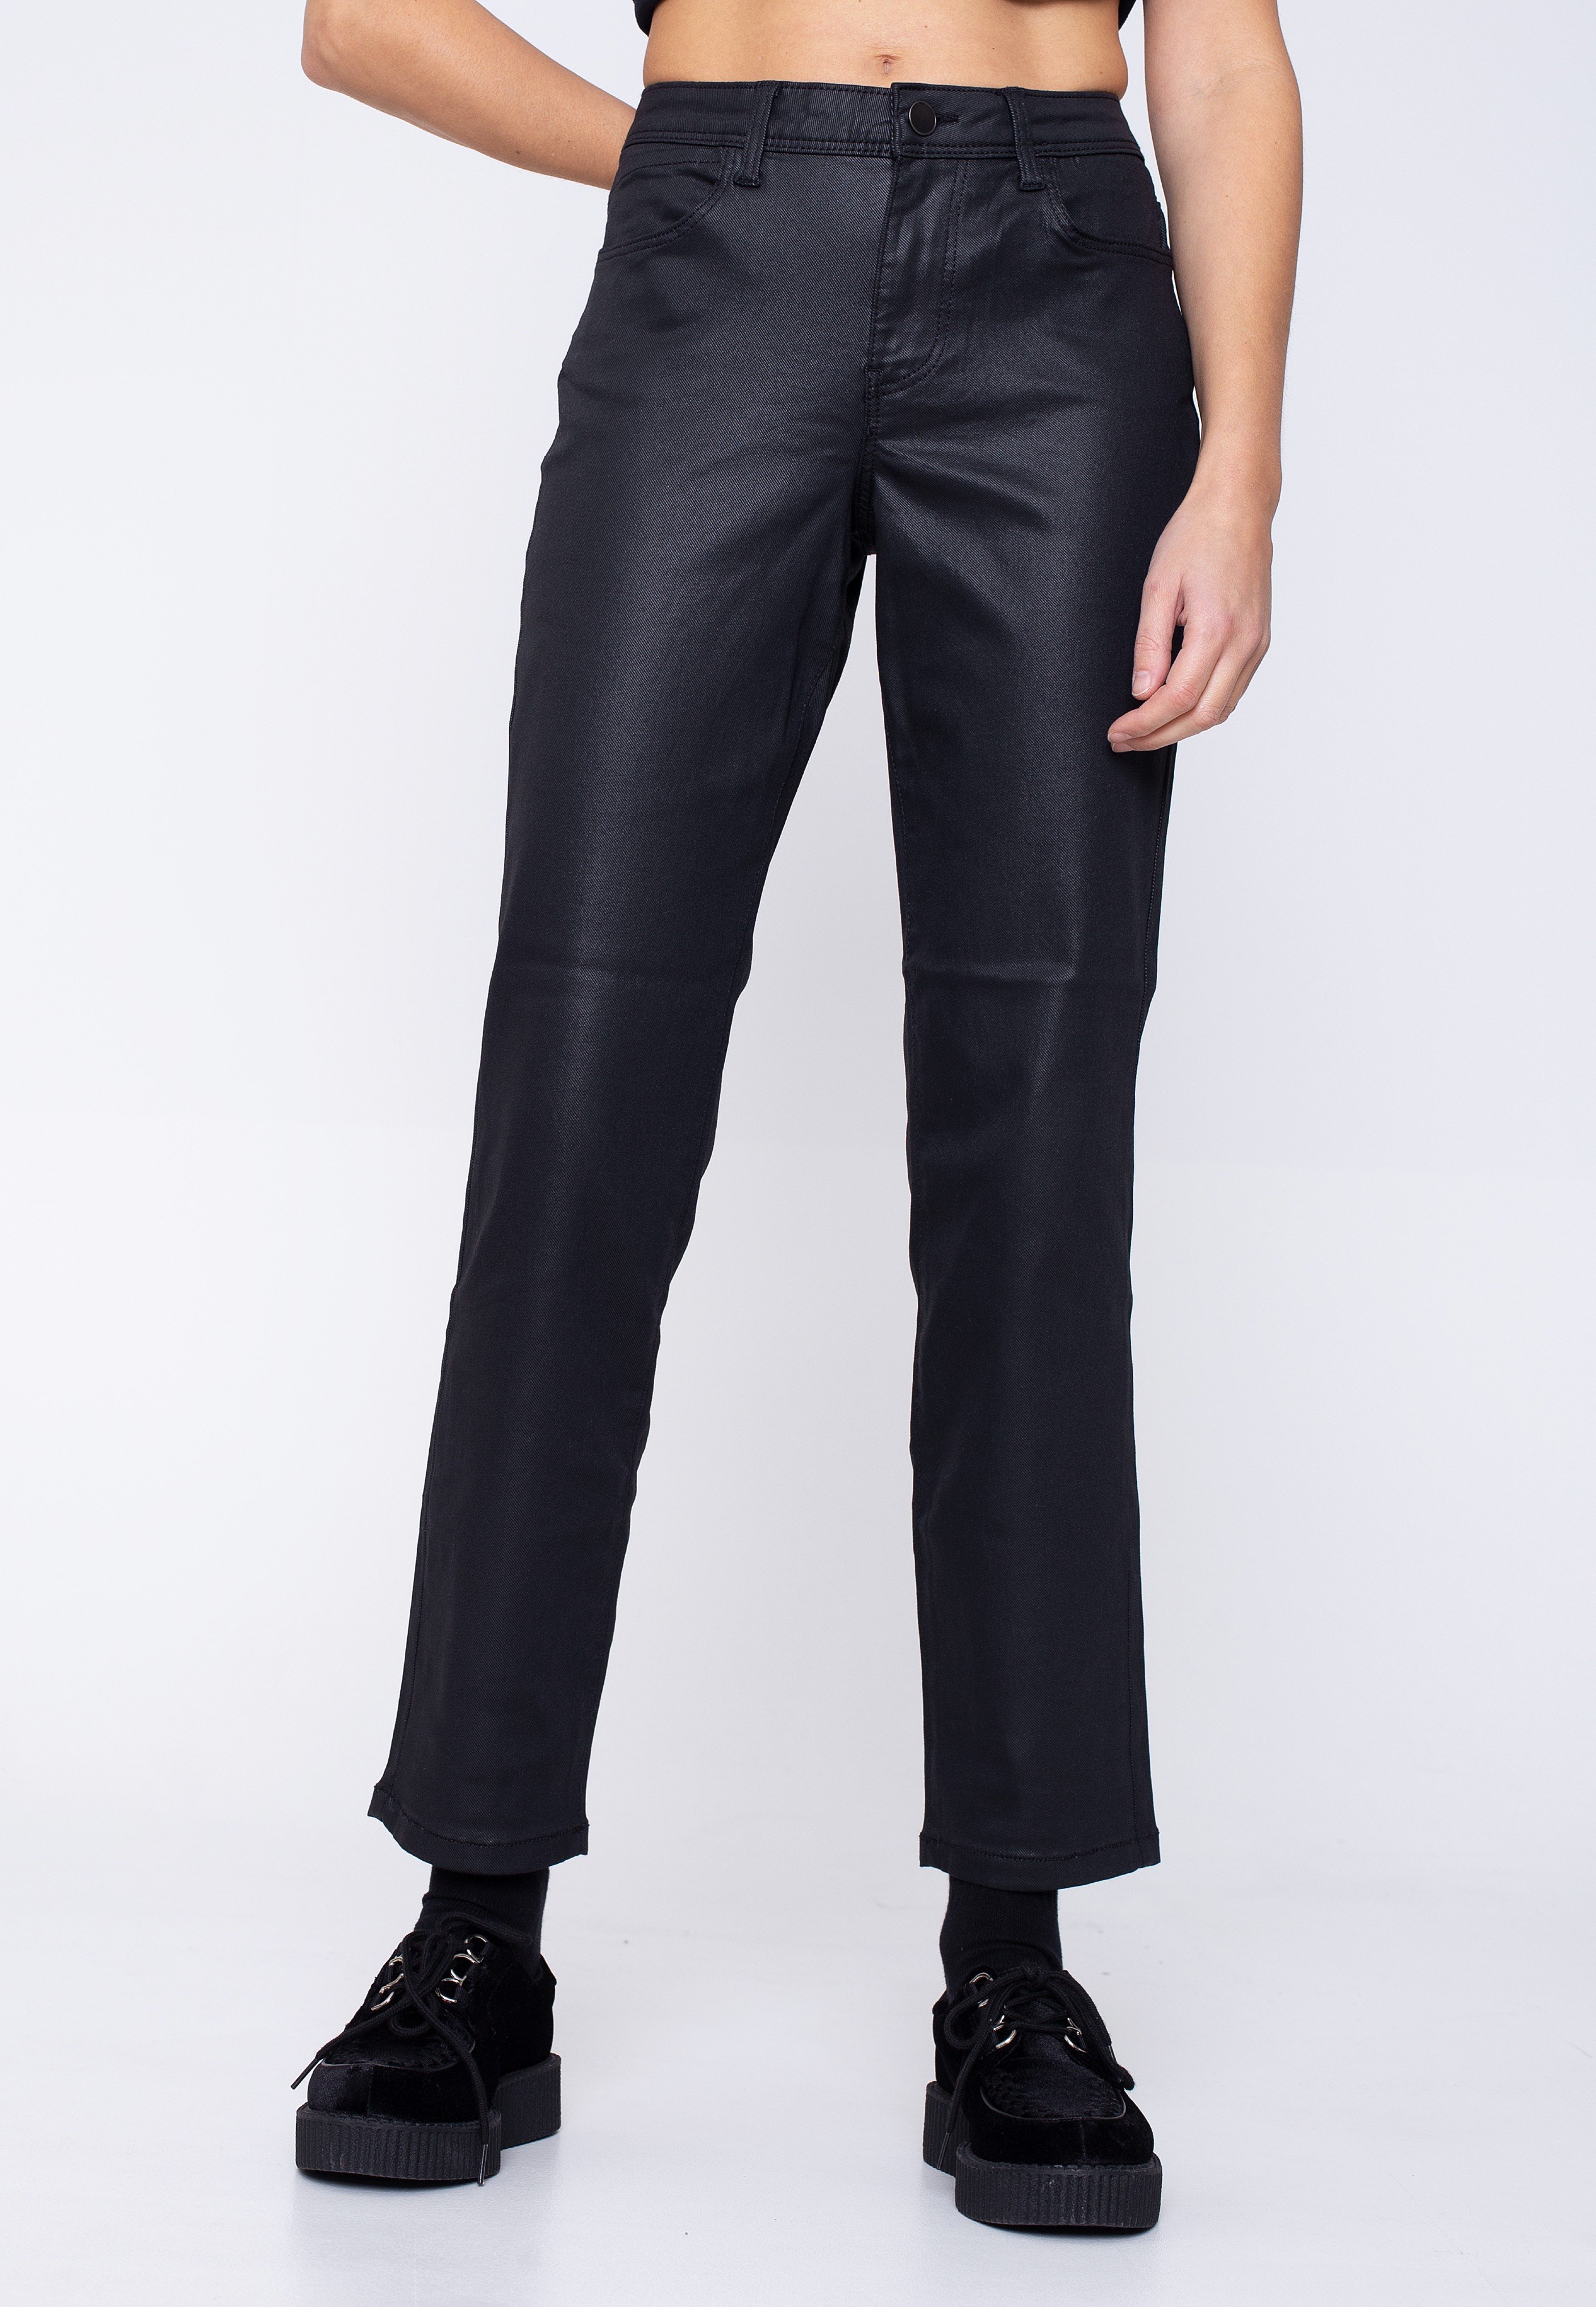 Noisy May - Olivia NW Slim Coated Black - Jeans